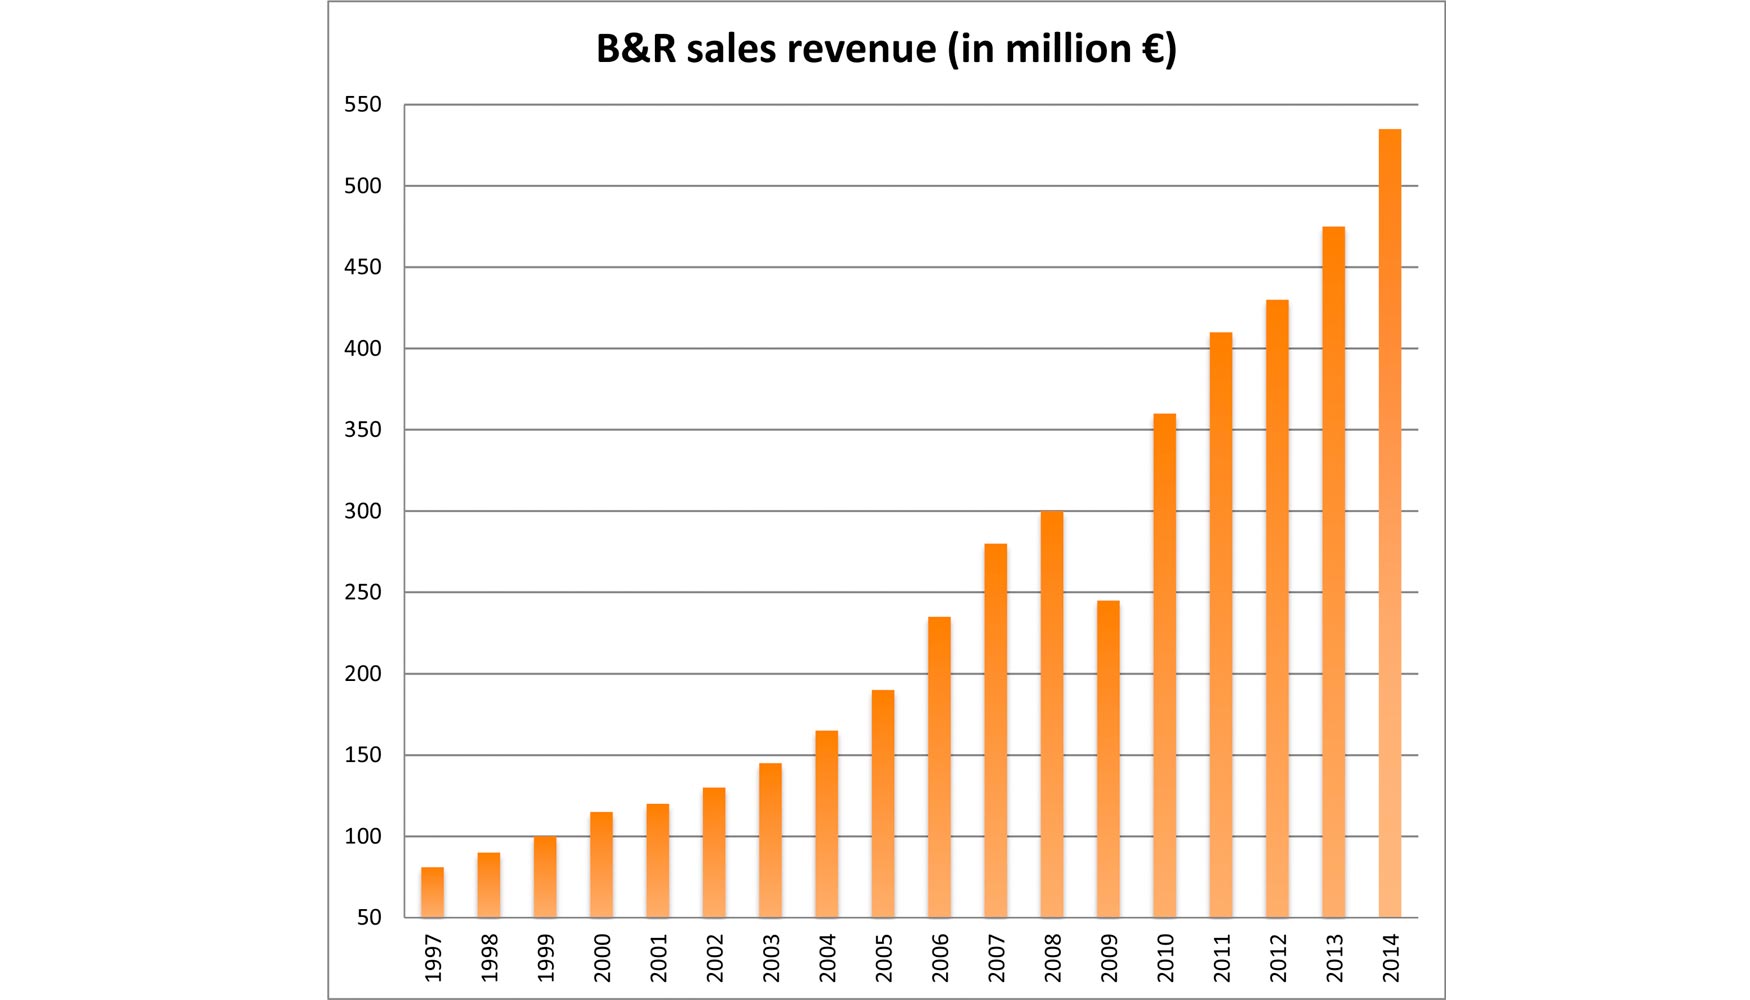 Evolucin de las ventas de B&R entre 1997 y 2014 (en millones de euros)